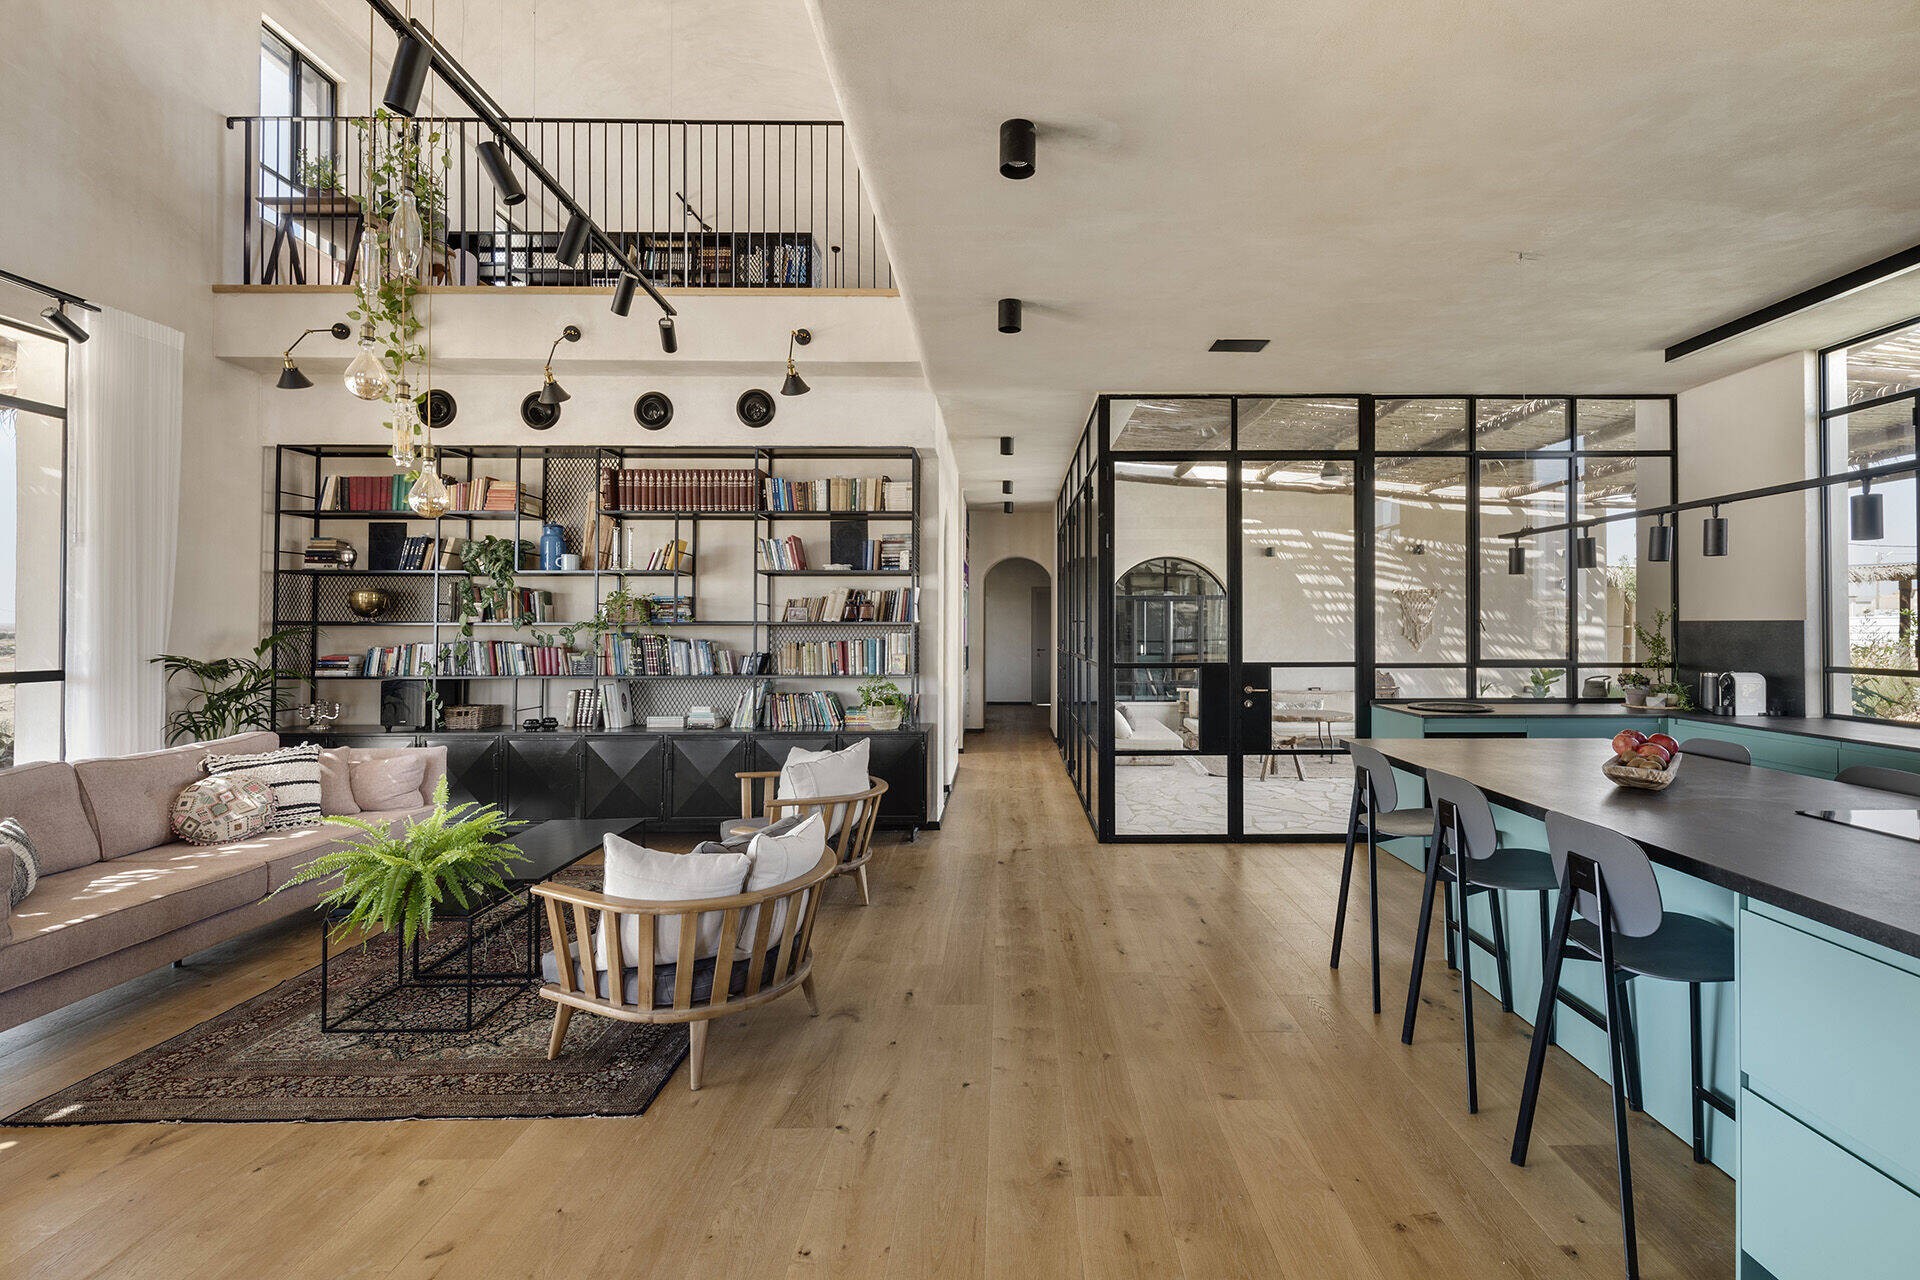 
Không gian bếp ăn được thiết kế nối ra phòng khách ngoài trời&nbsp;
